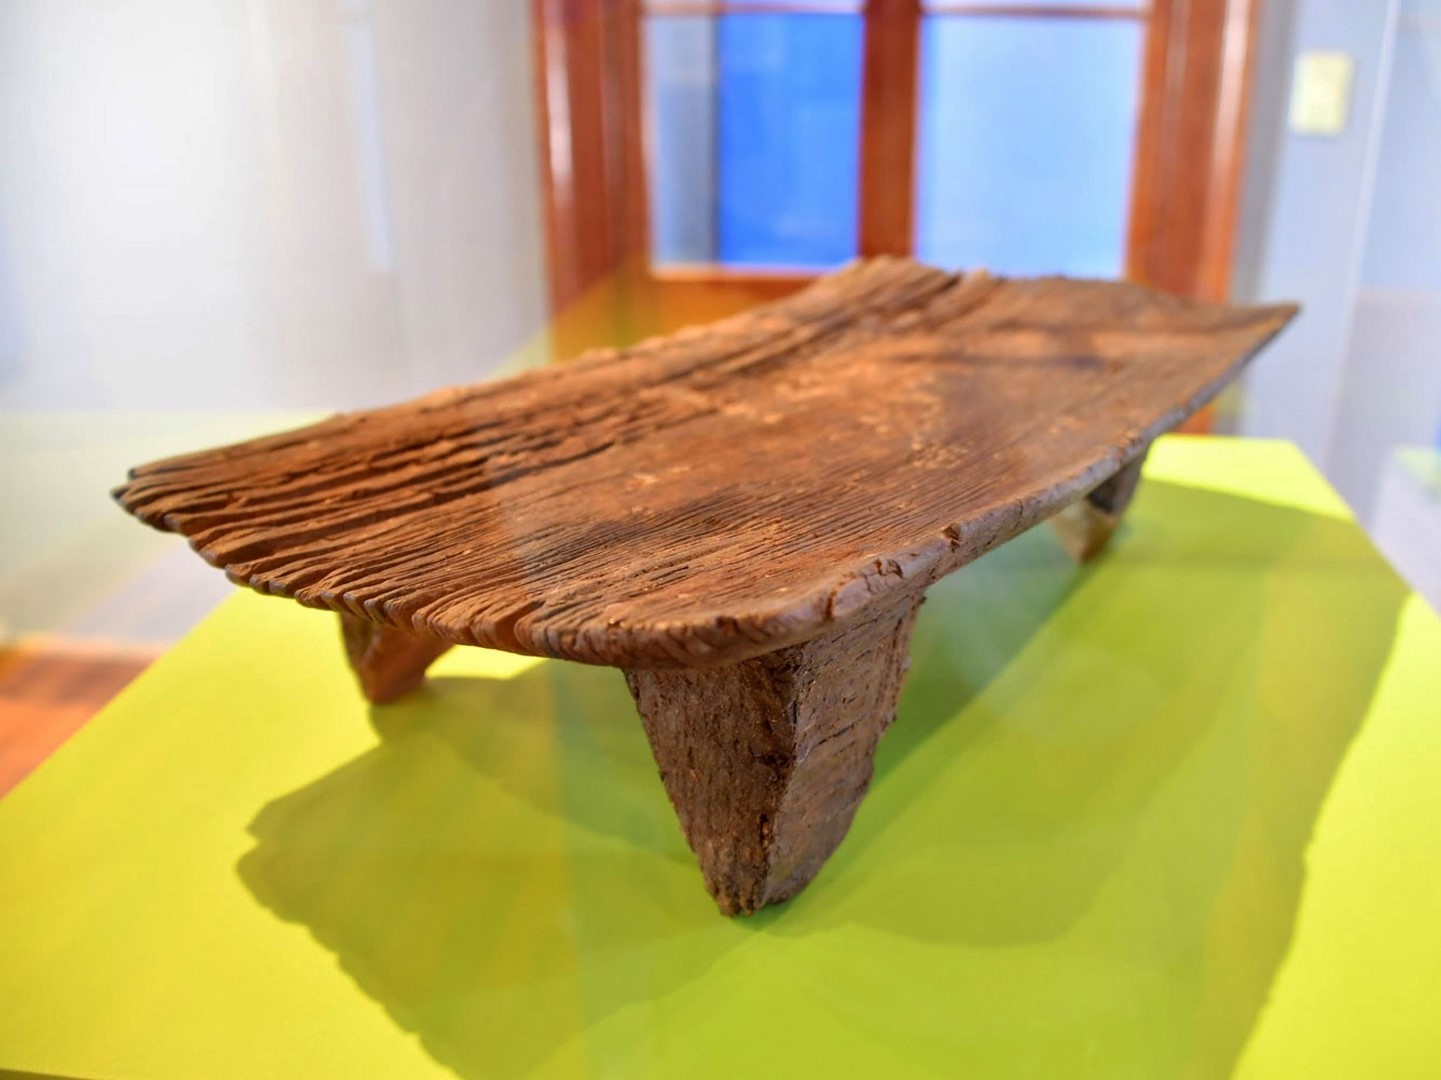 Museo Nacional expone objeto de madera precolombino con 2.300 años de antigüedad